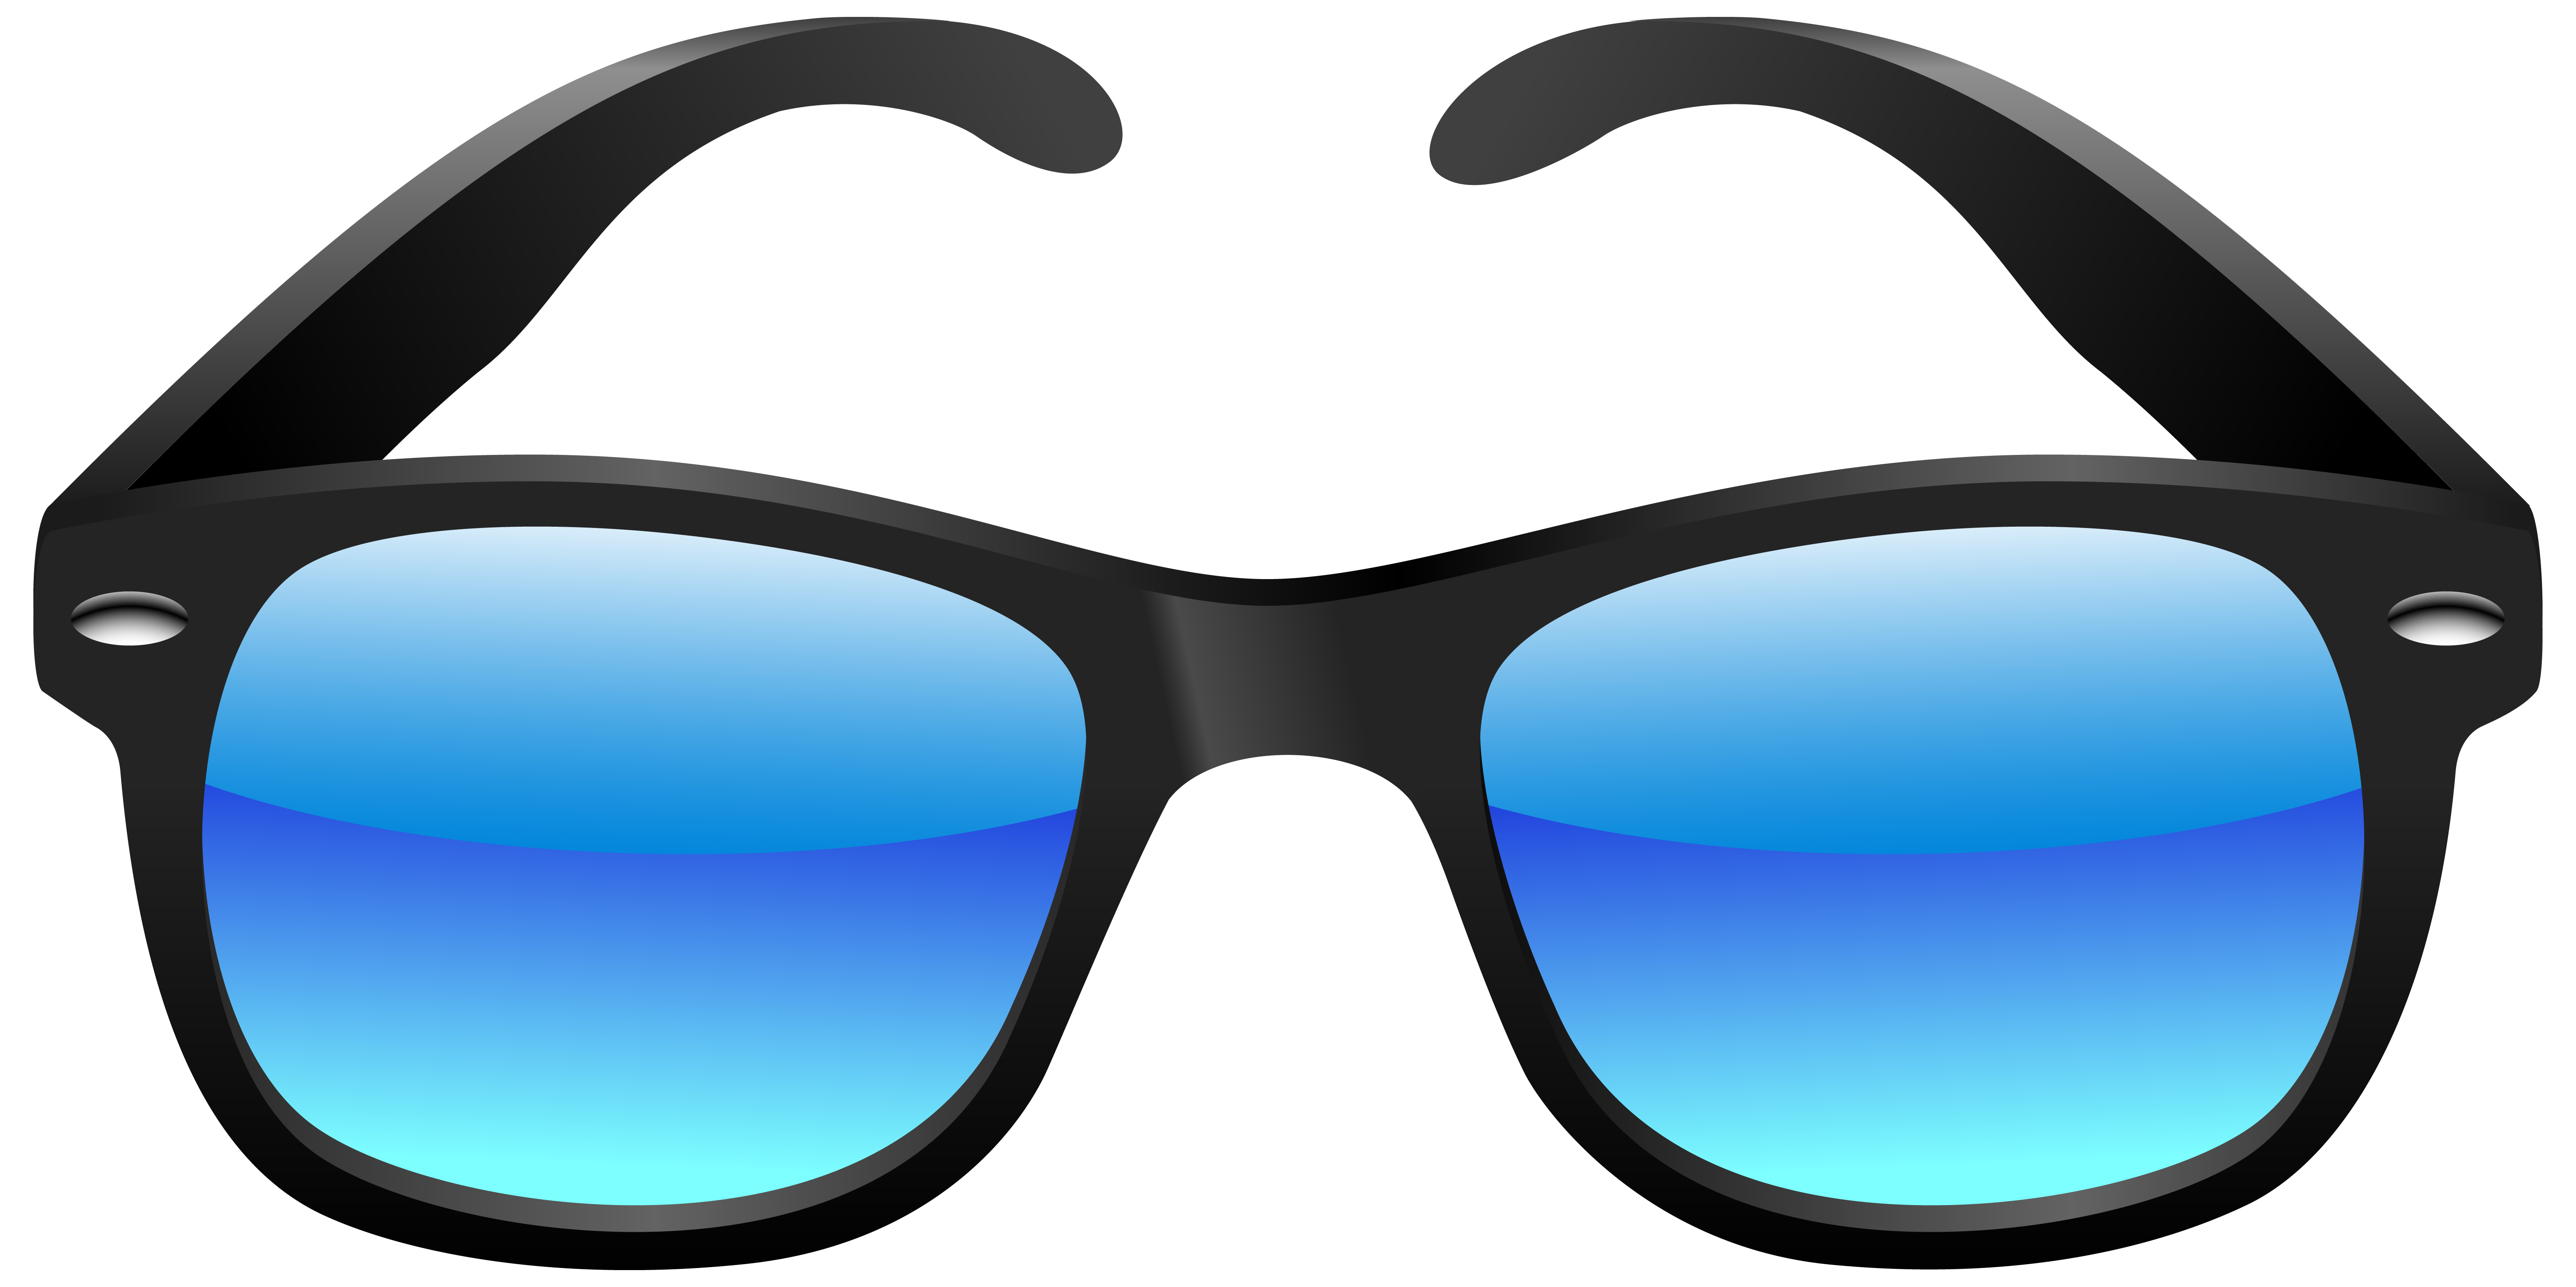 Clip art of sunglasses. Clipart hospital tray